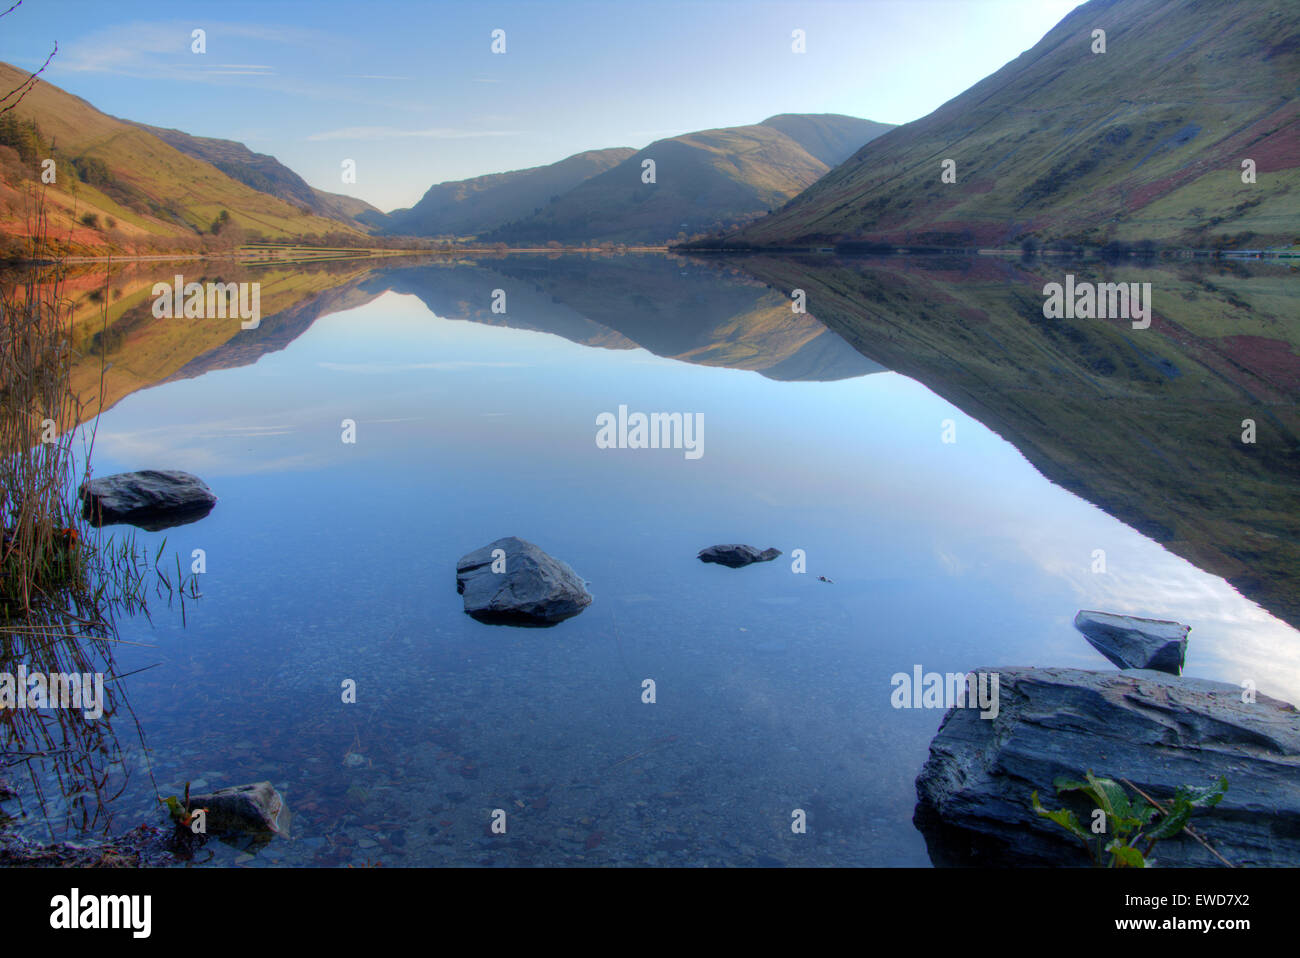 Talellyn lake in Wales Stock Photo